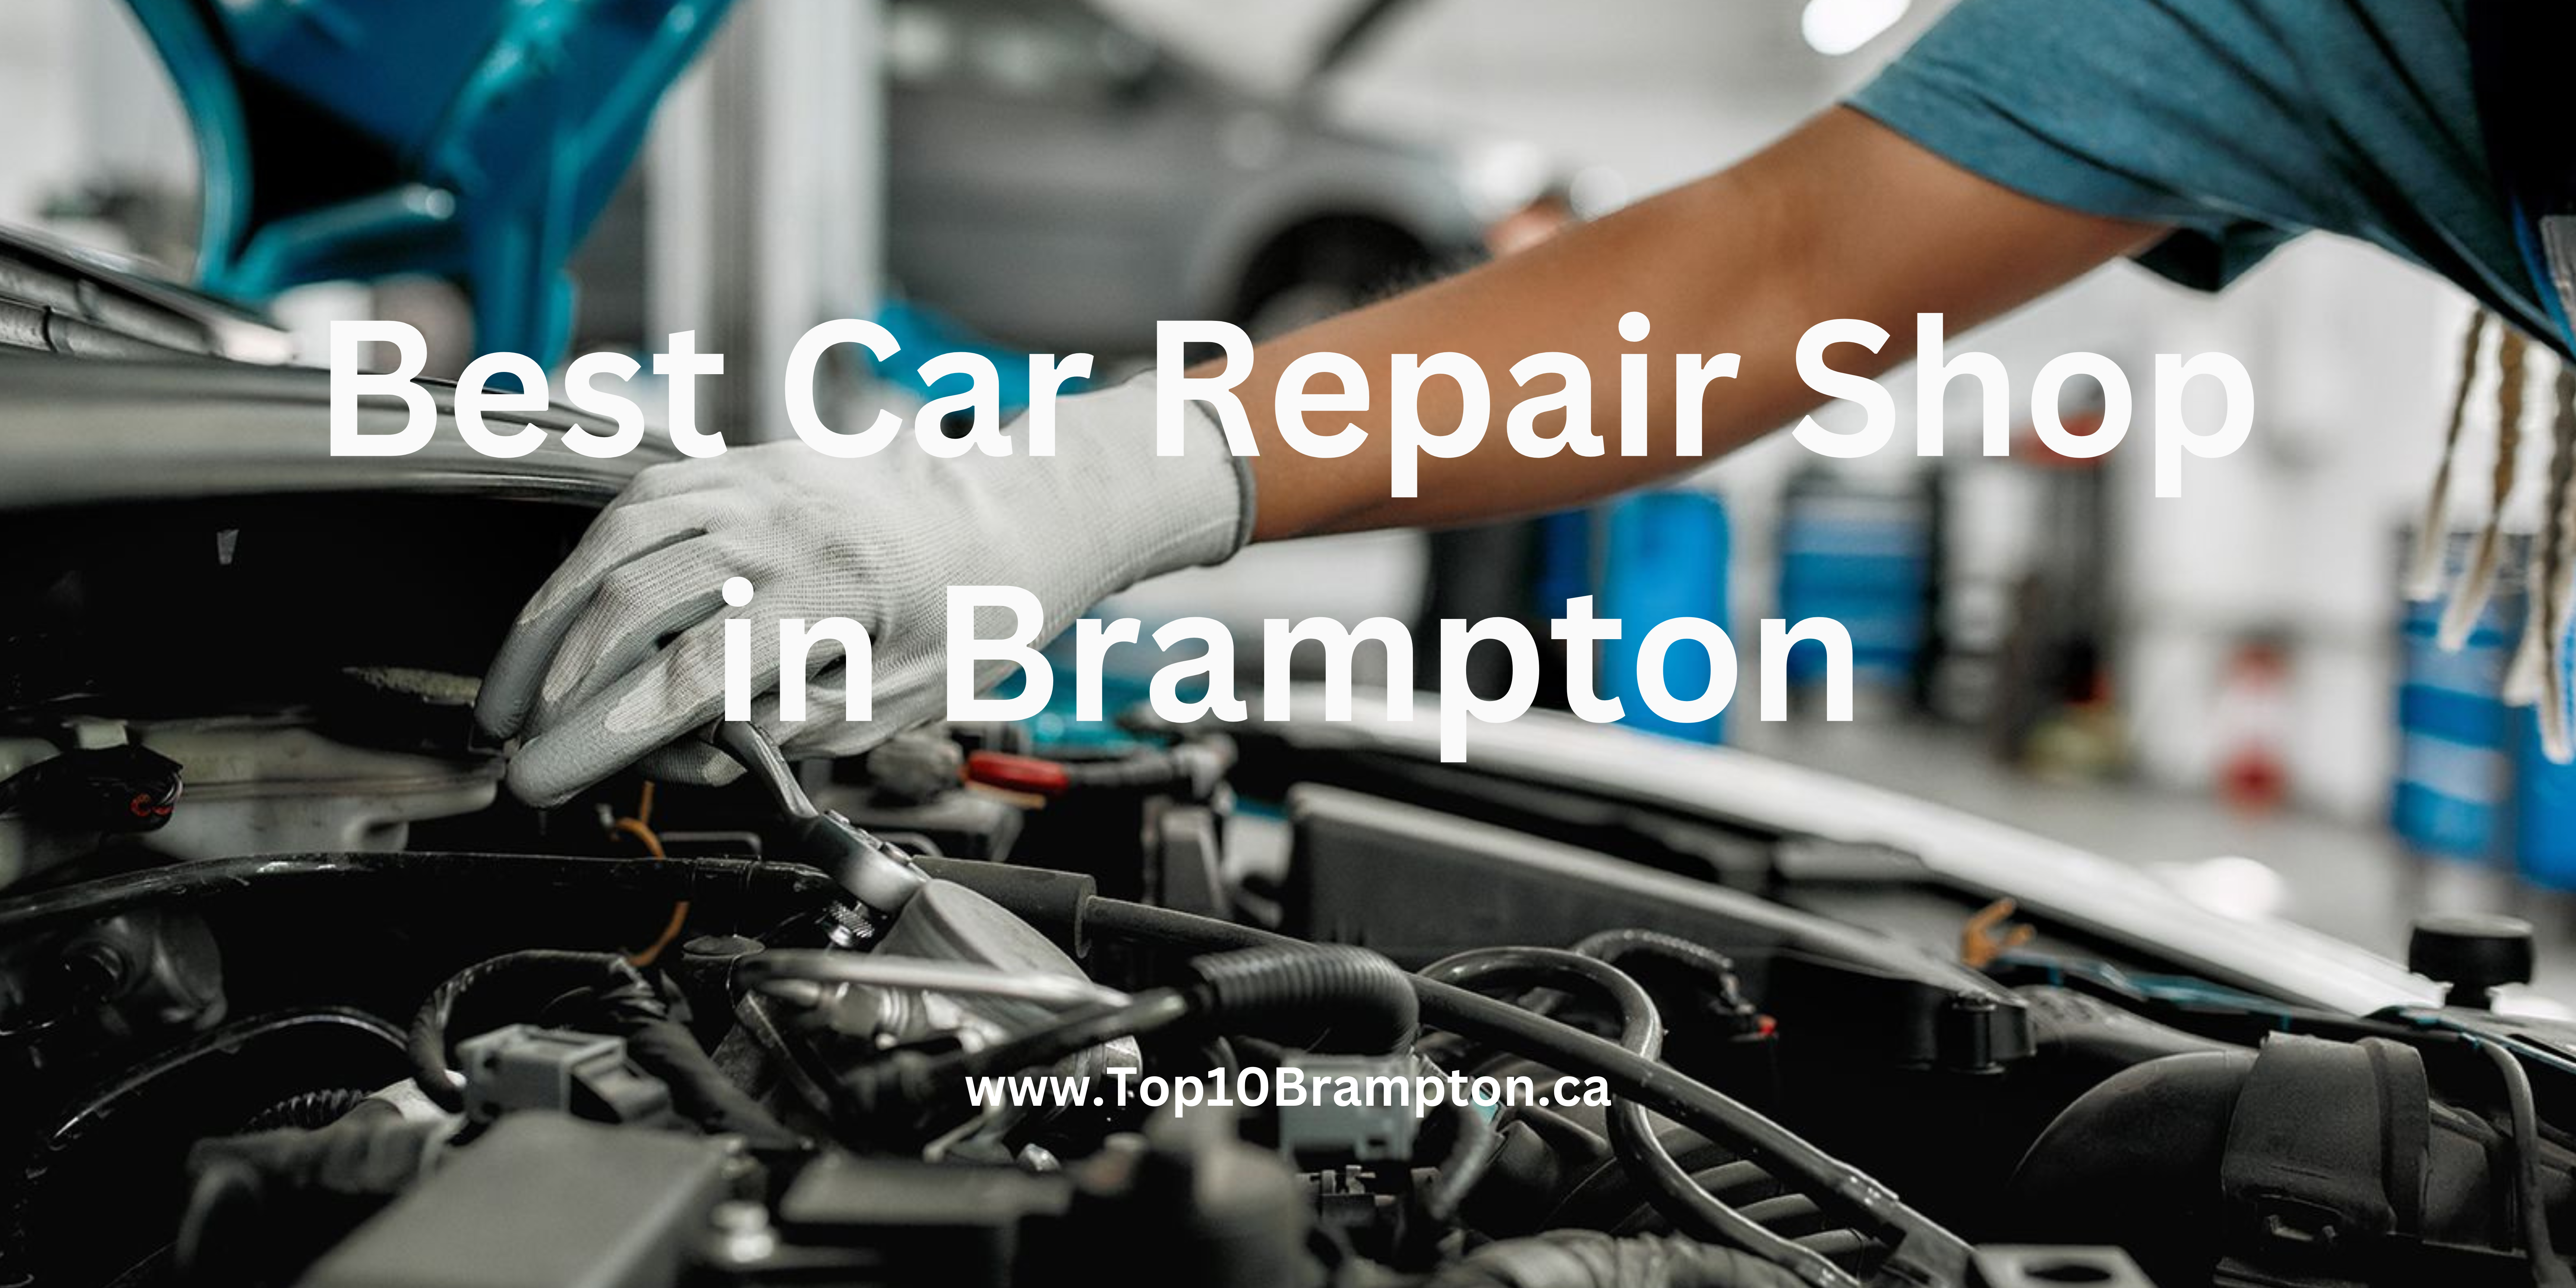 Best Car Repair Shop in Brampton